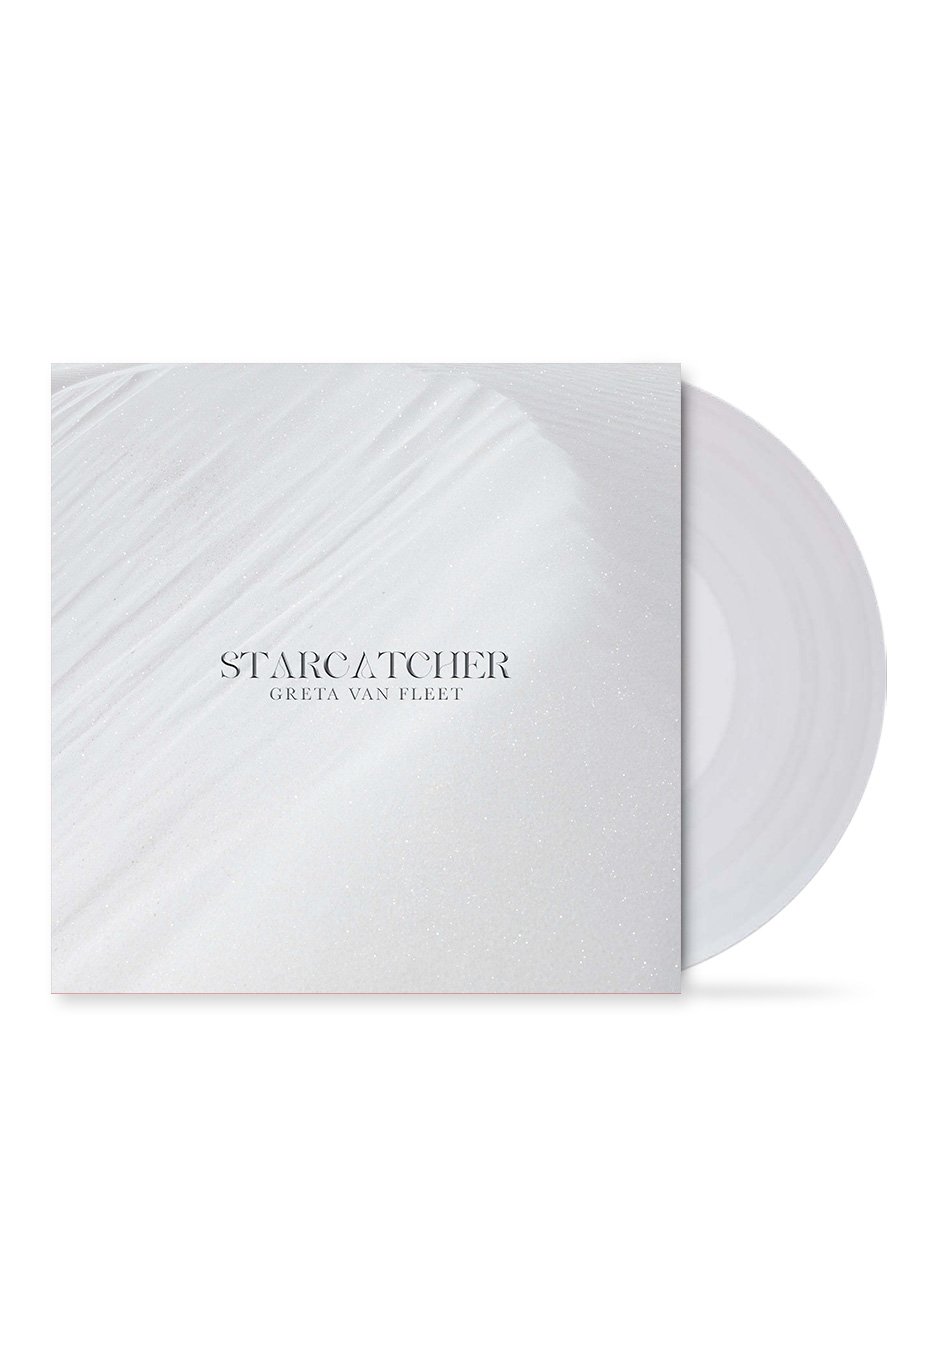 Greta Van Fleet - Starcatcher Clear - Colored Vinyl